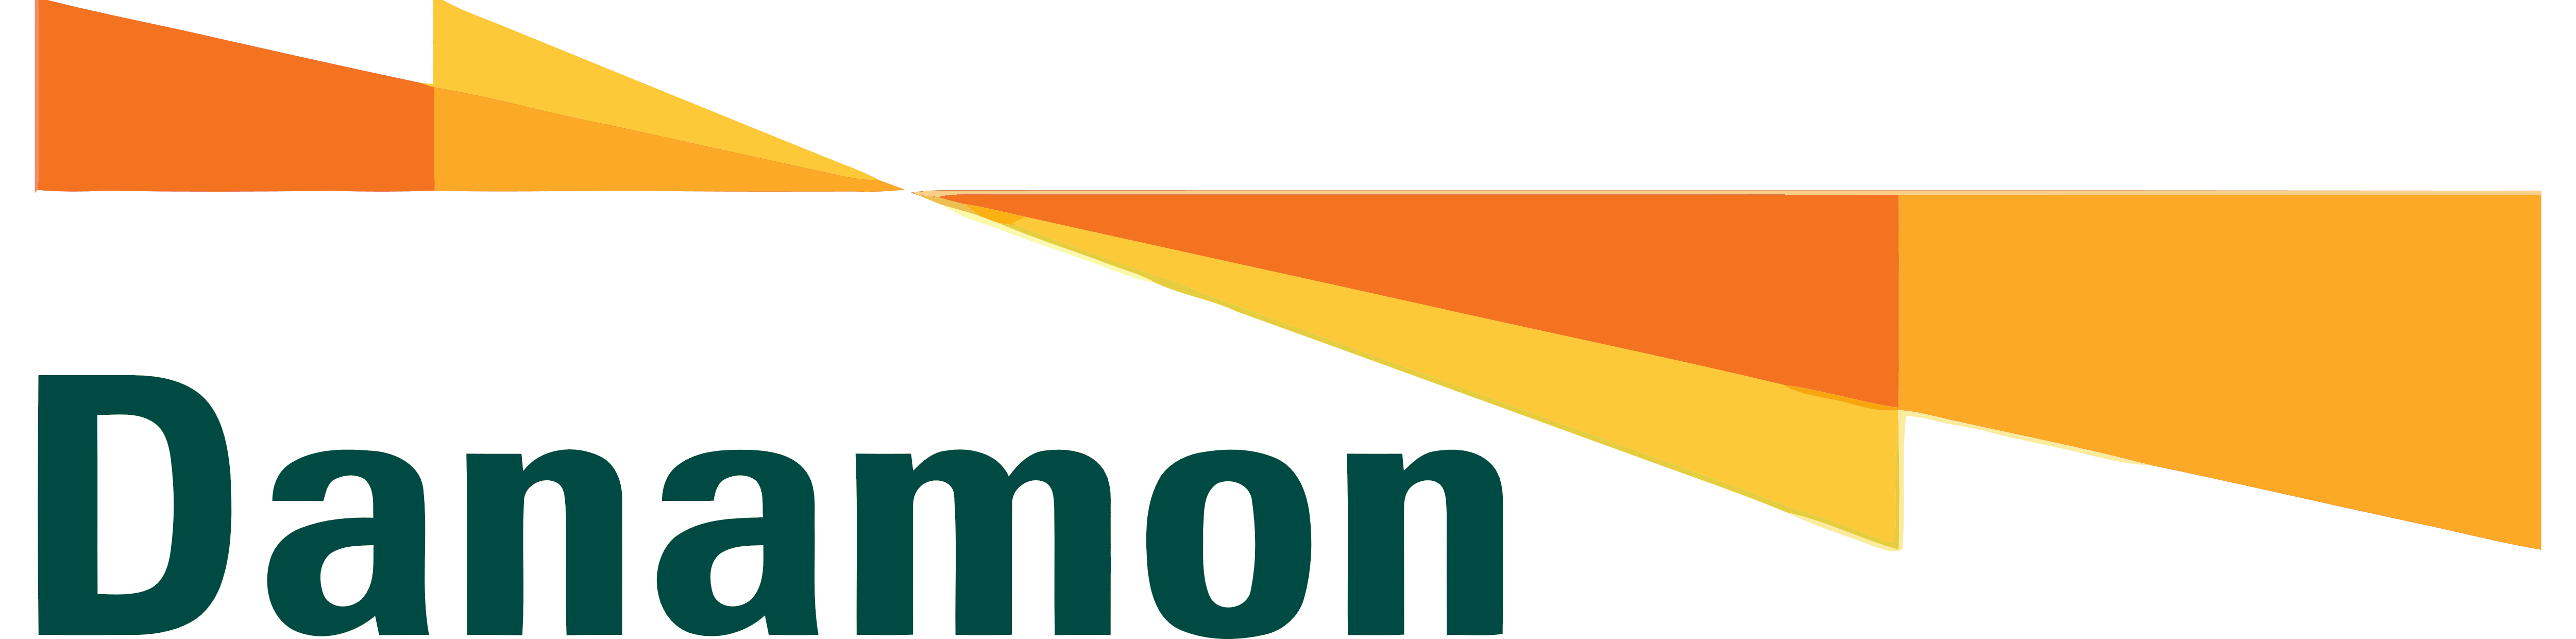 Bank Danamon – Logos Download